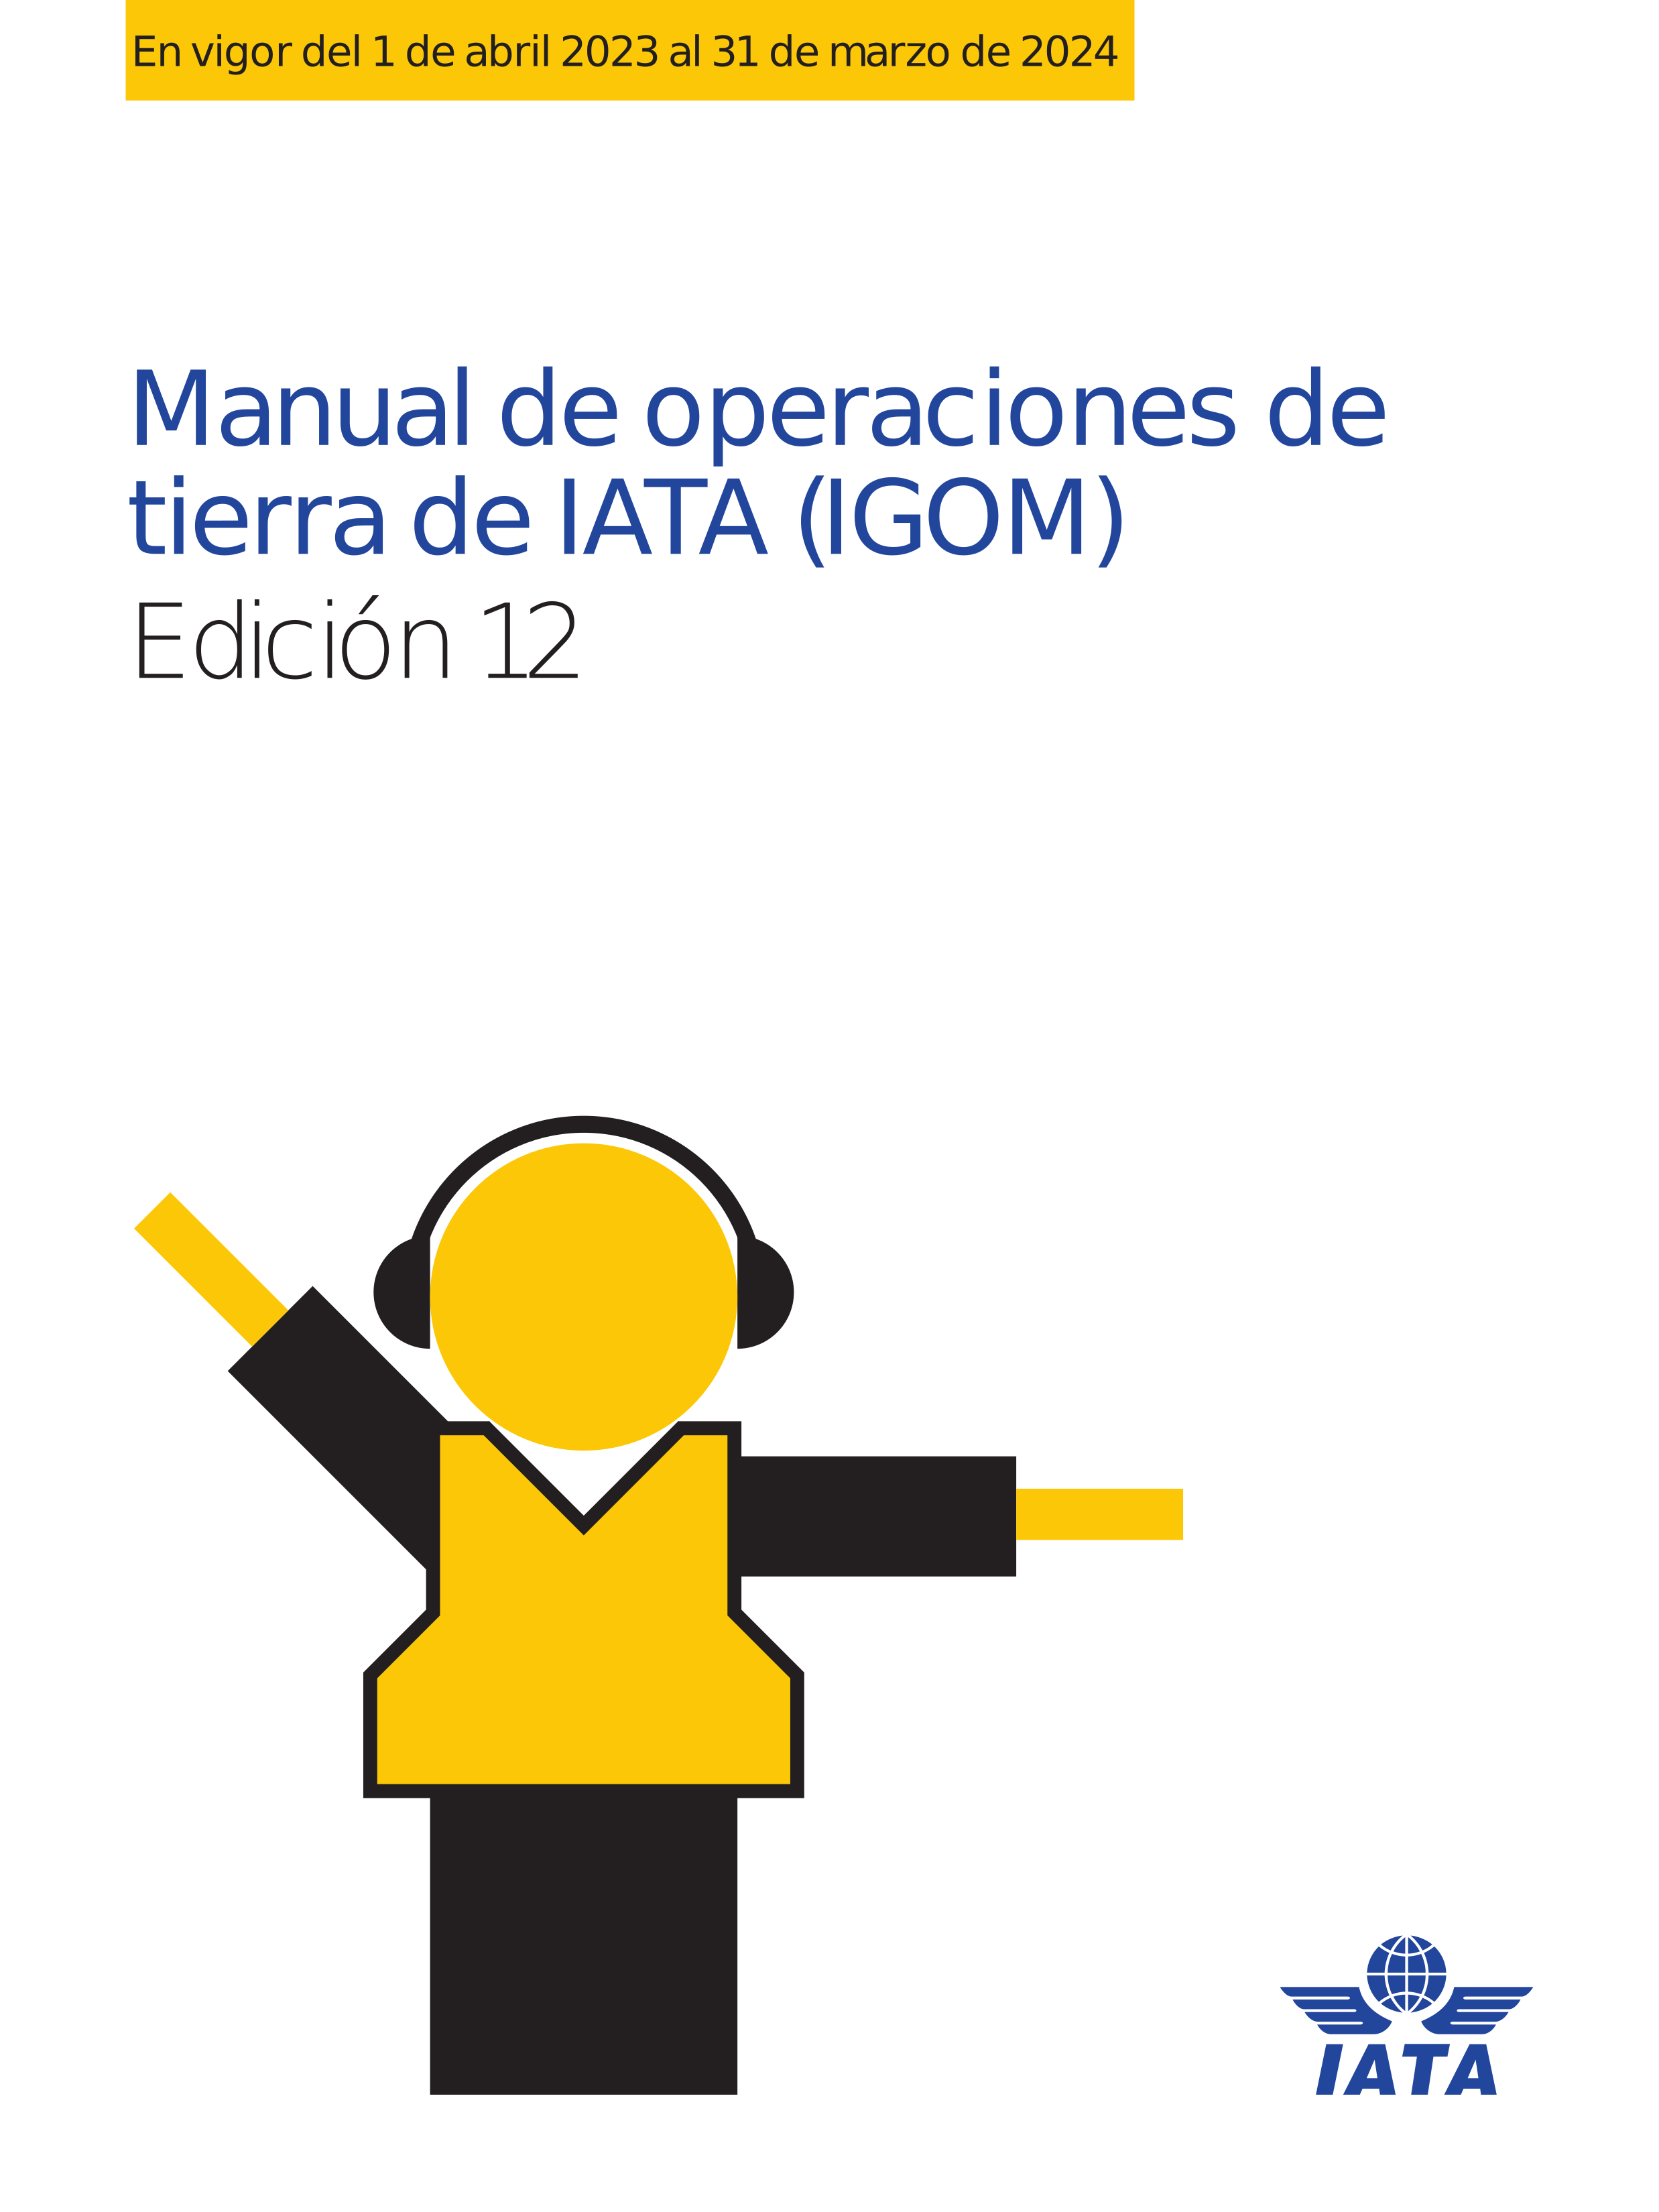 IATA IGOM 2023